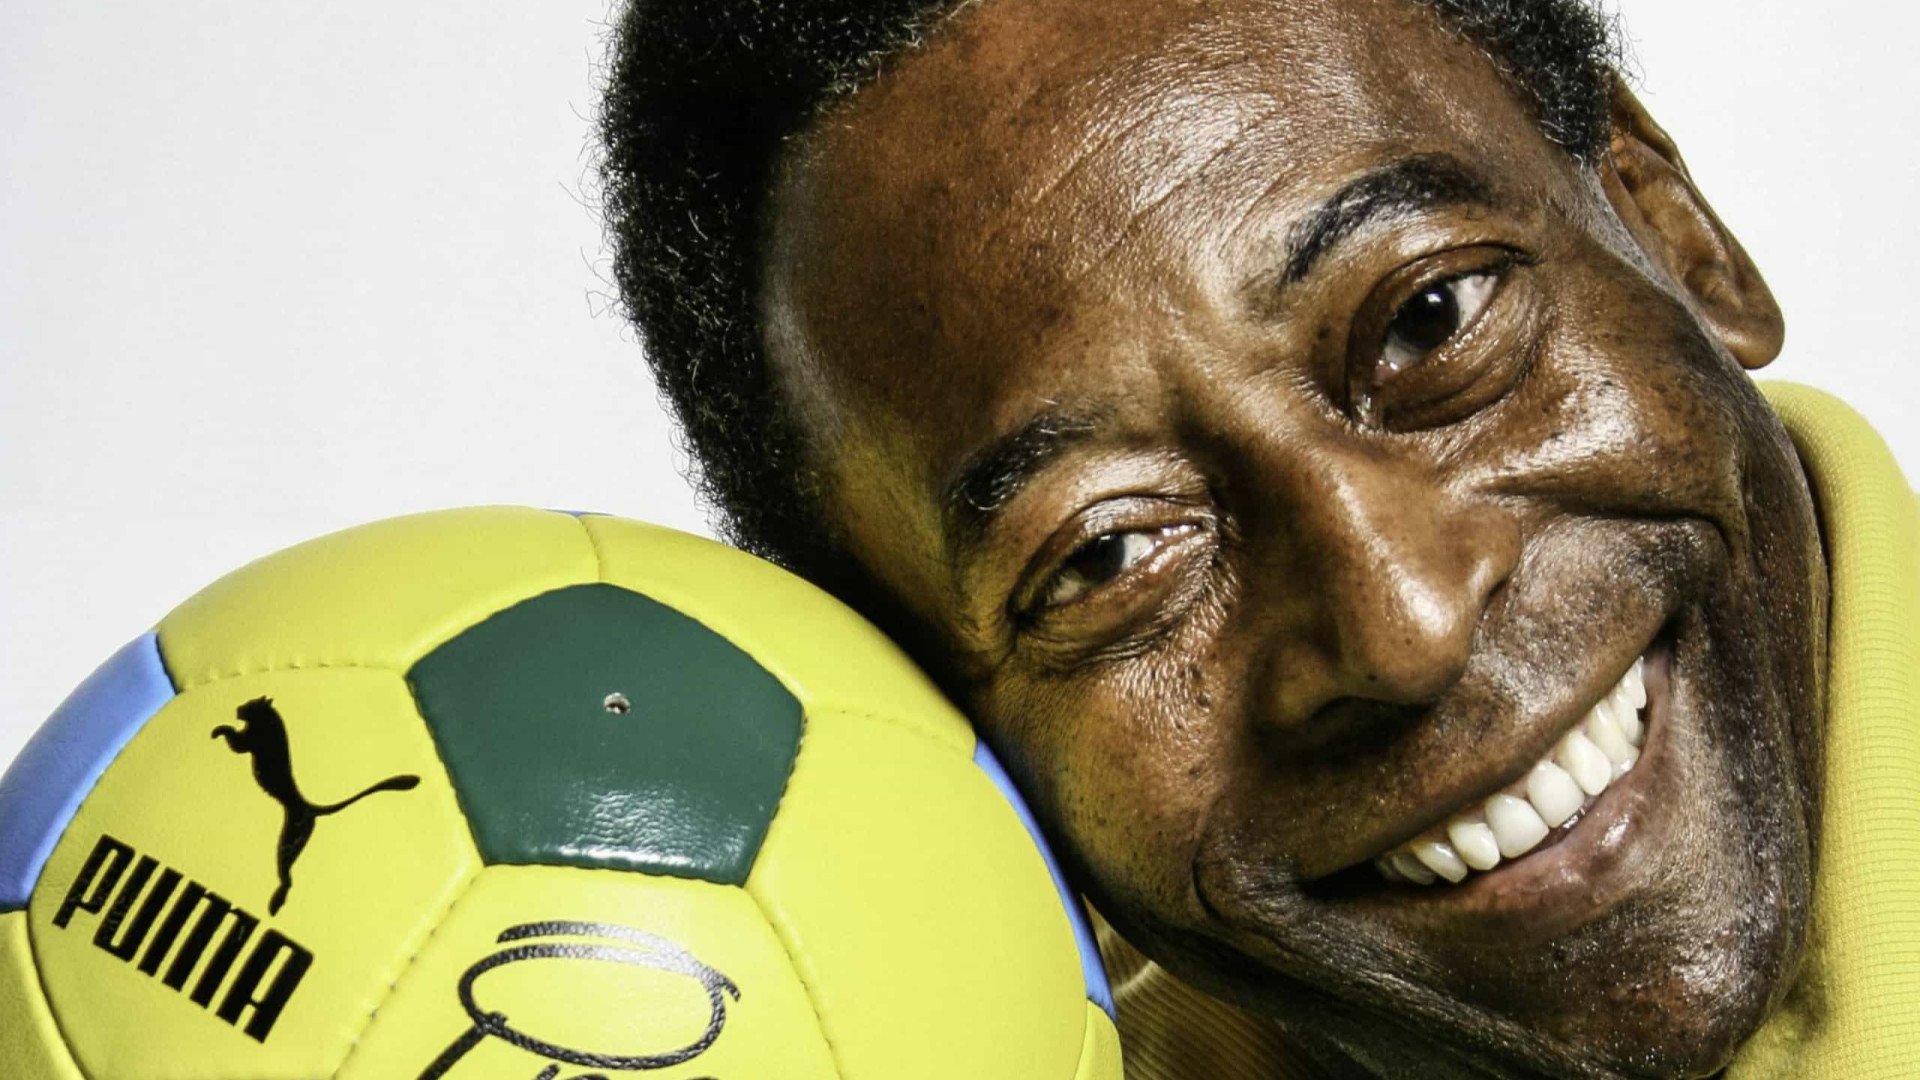 De Pelé a Neymar, jogadores celebridades são alvos de estudos na academia